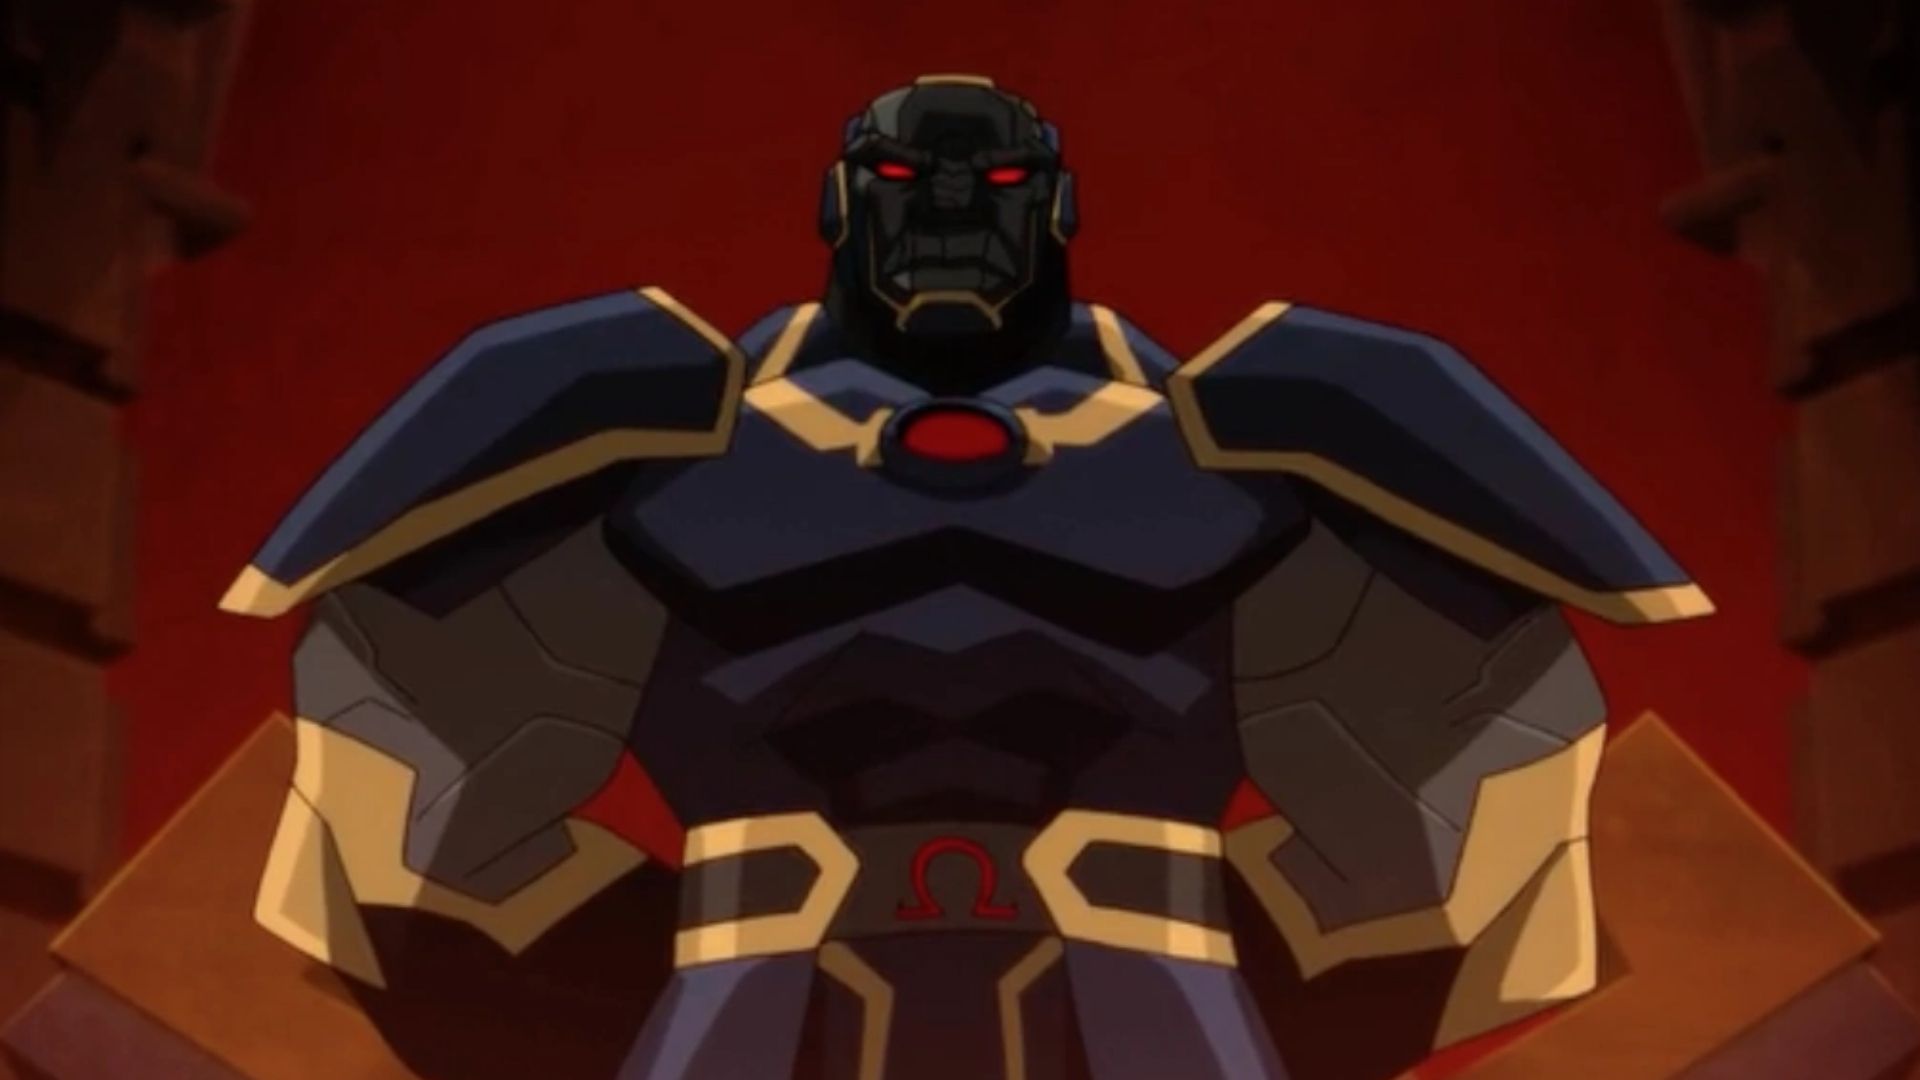 Darkseid: Conheça o maior vilão da DC Comics